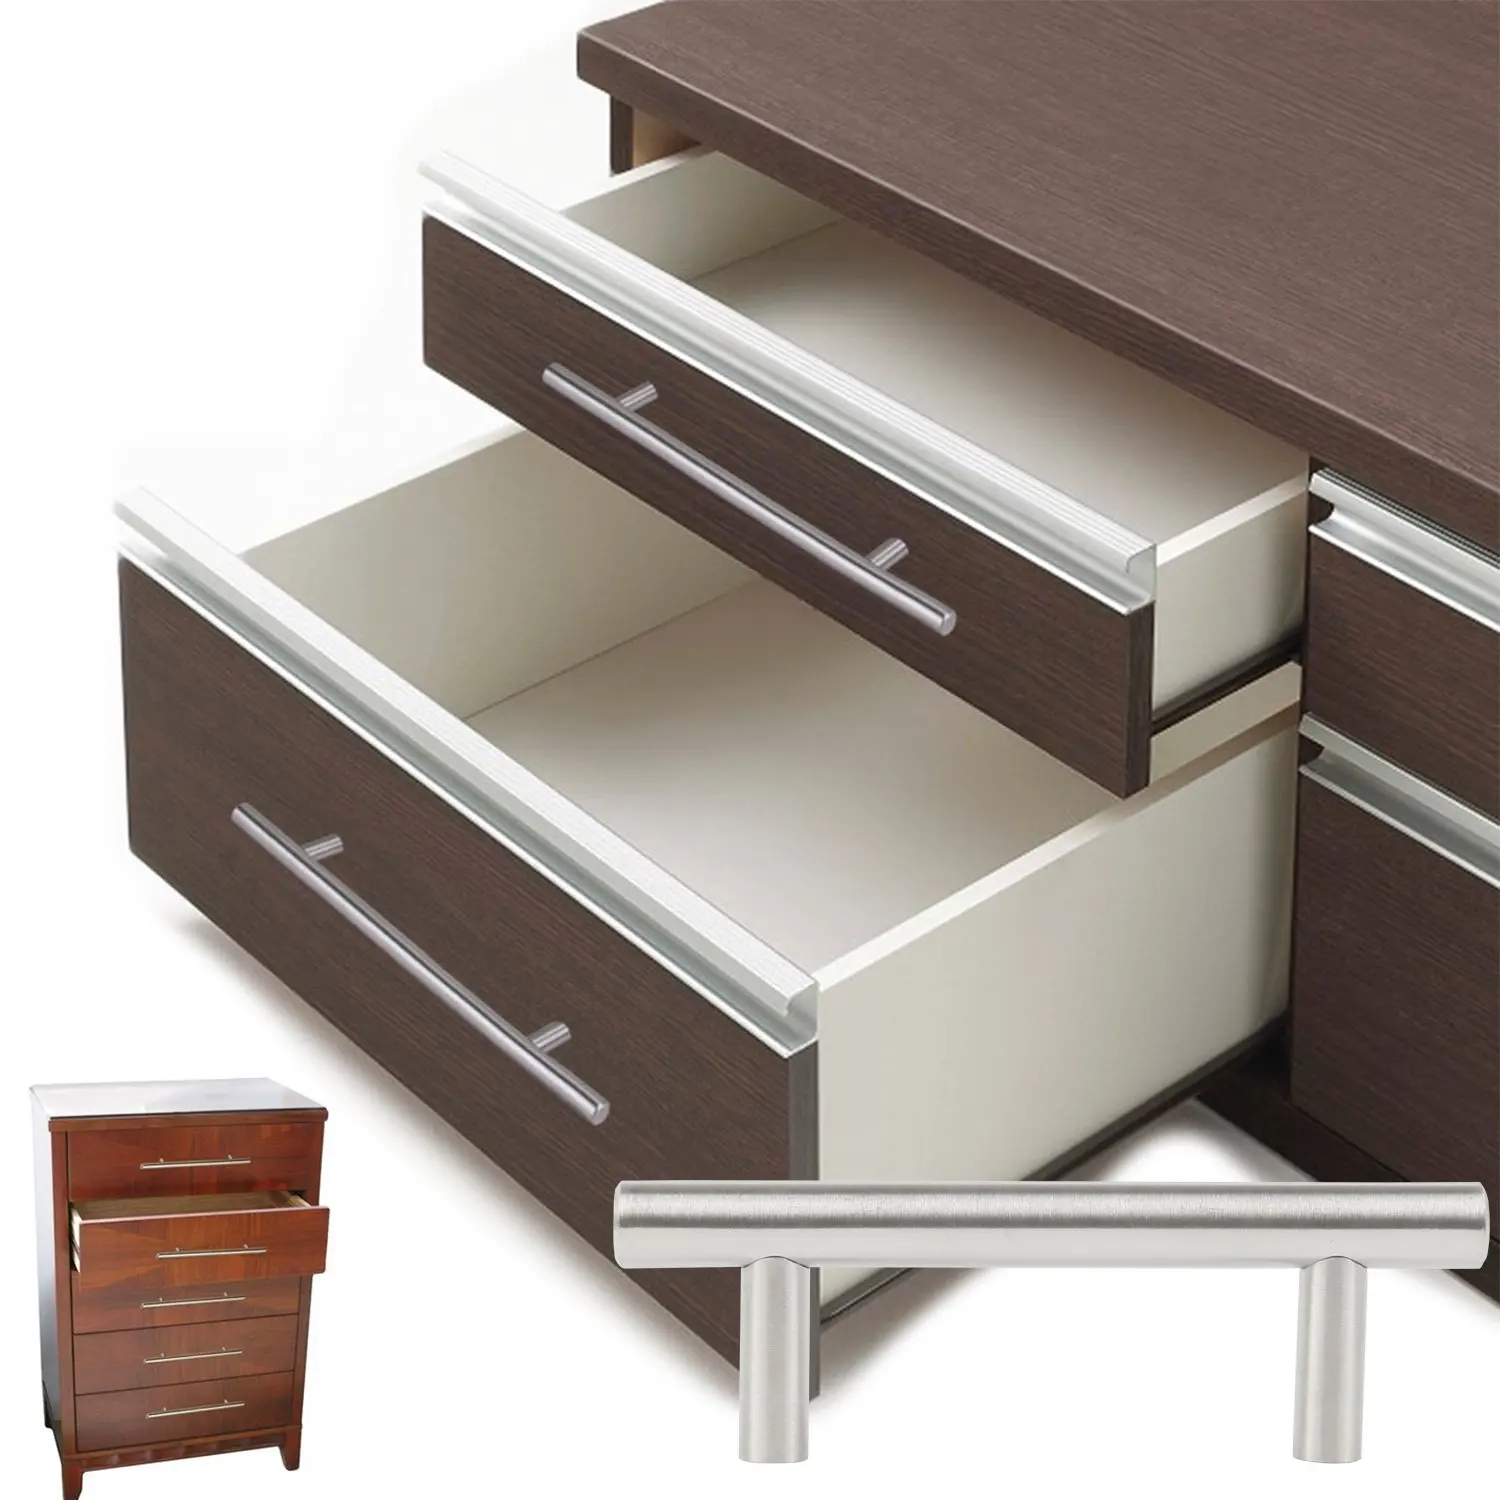 CNIM Hot Silver Pack с 20 ручками мебели/шкафа/ящика из нержавеющей стали, общая ширина 100 мм, Т-образная ручка центр 6